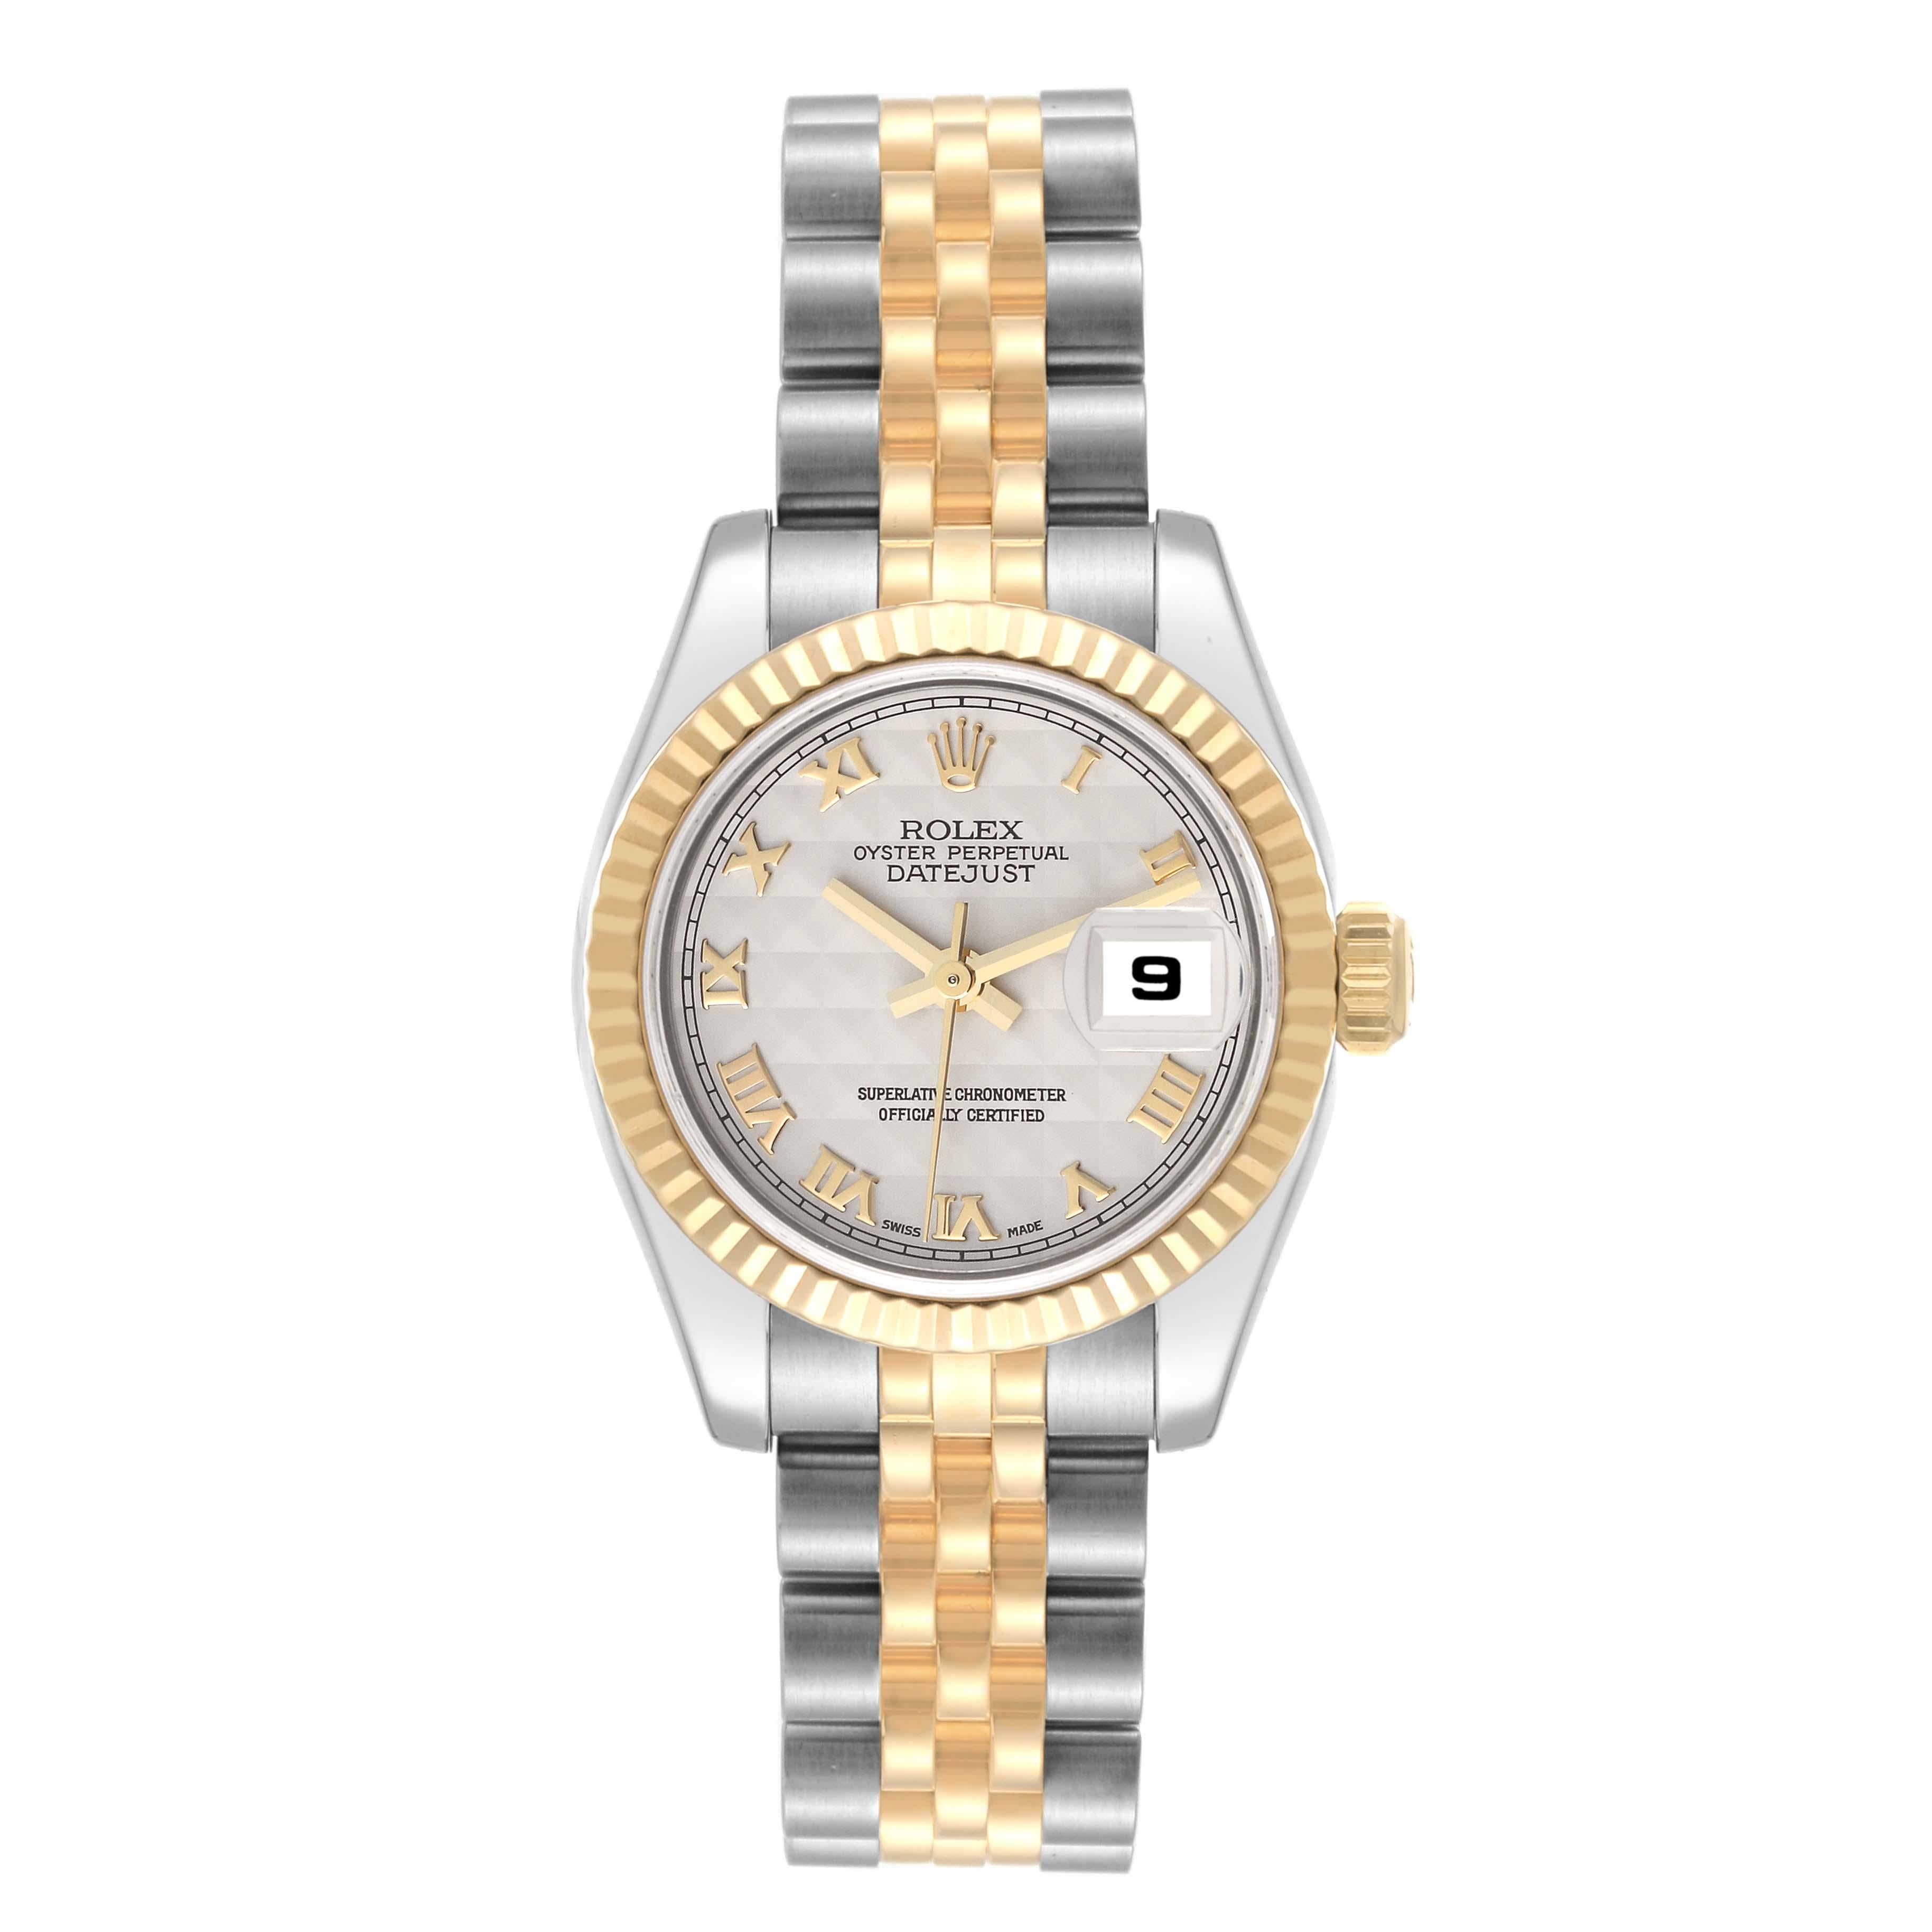 Rolex Datejust Steel Yellow Gold Ivory Pyramid Dial Ladies Watch 179173. Mouvement à remontage automatique certifié officiellement chronomètre. Boîtier oyster en acier inoxydable de 26 mm de diamètre. Logo Rolex sur une couronne en or jaune 18